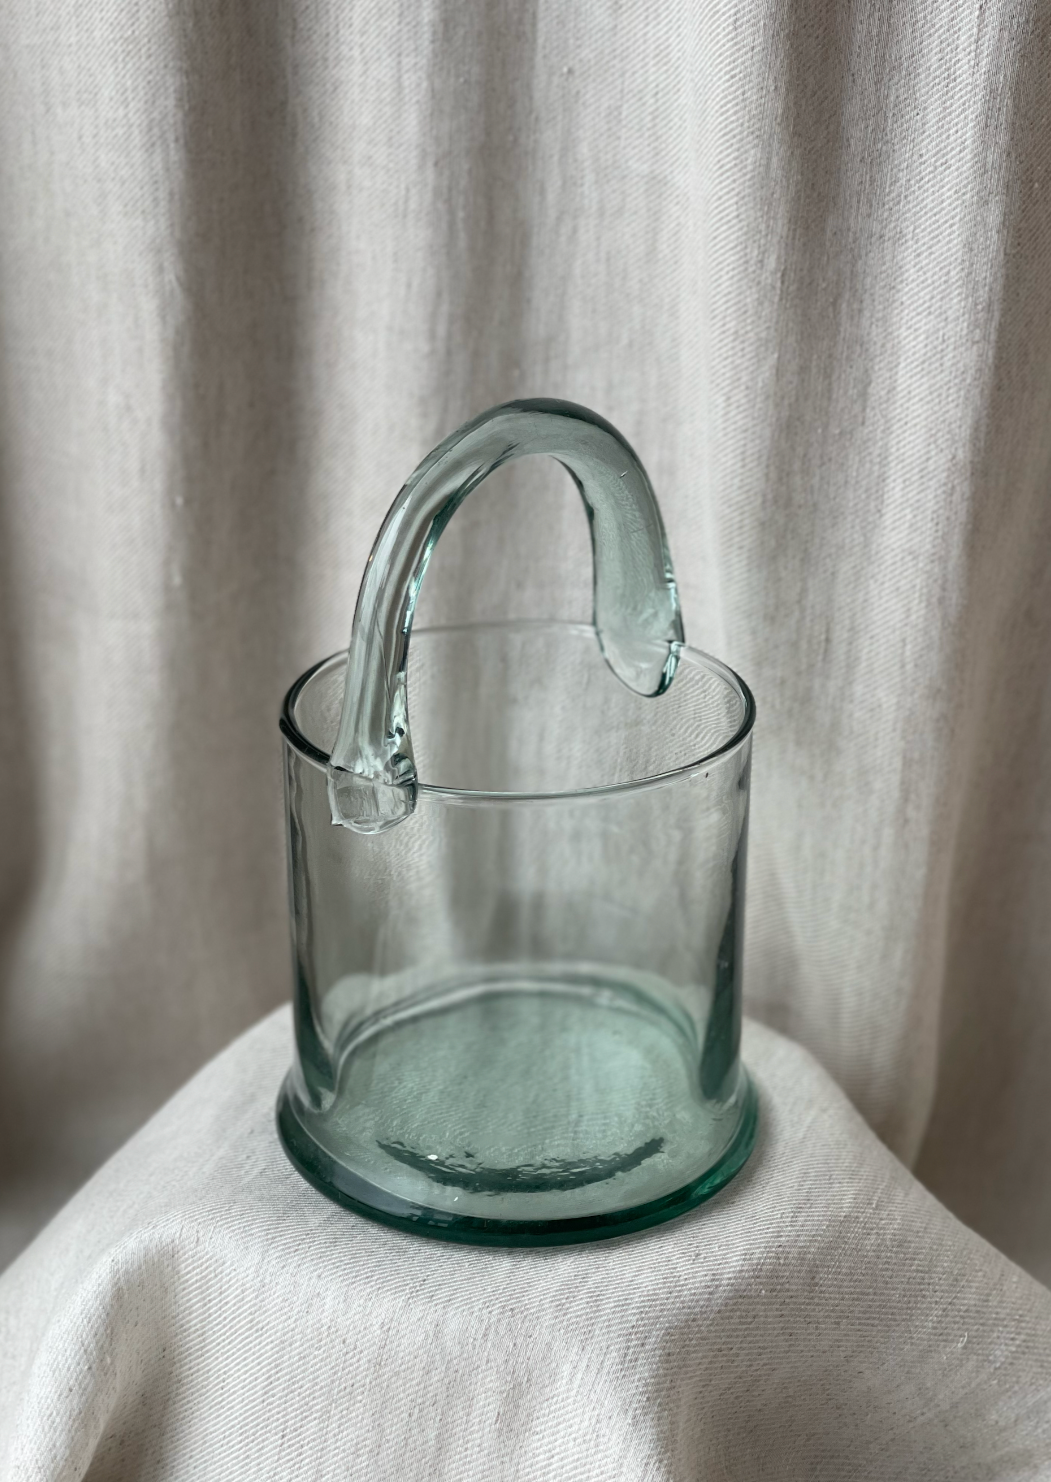 Iconic glass bucket